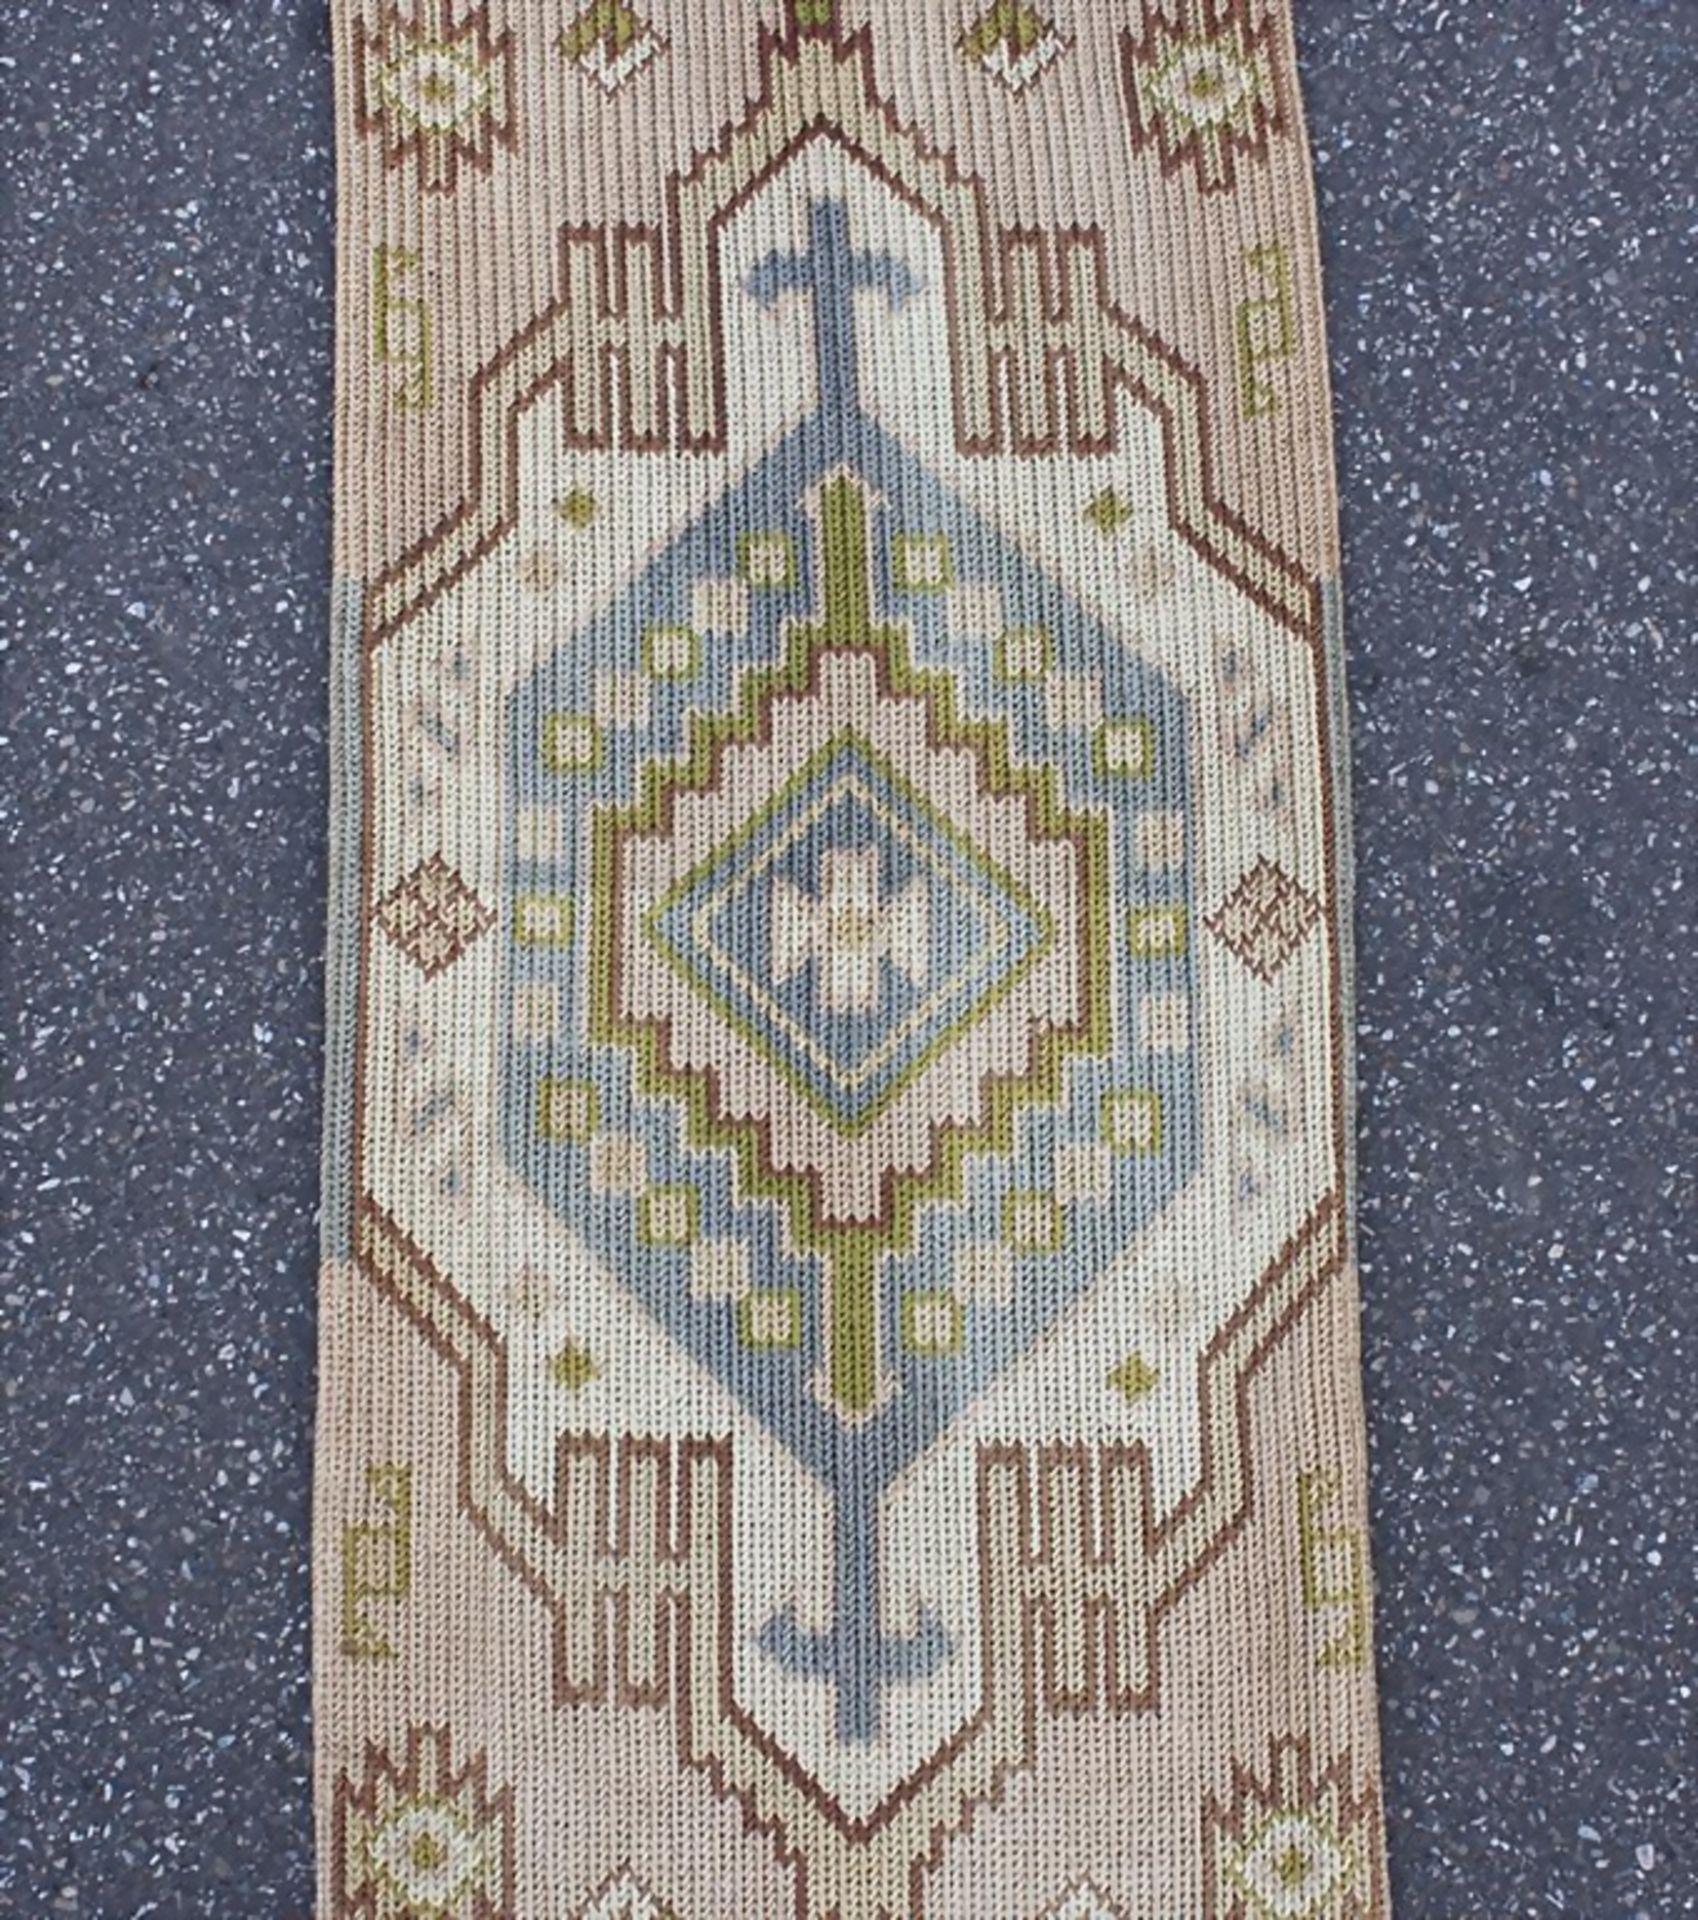 Textile Türrahmung/Textile Doorframe, Jugendstil, um 1900/1910 - Image 3 of 4